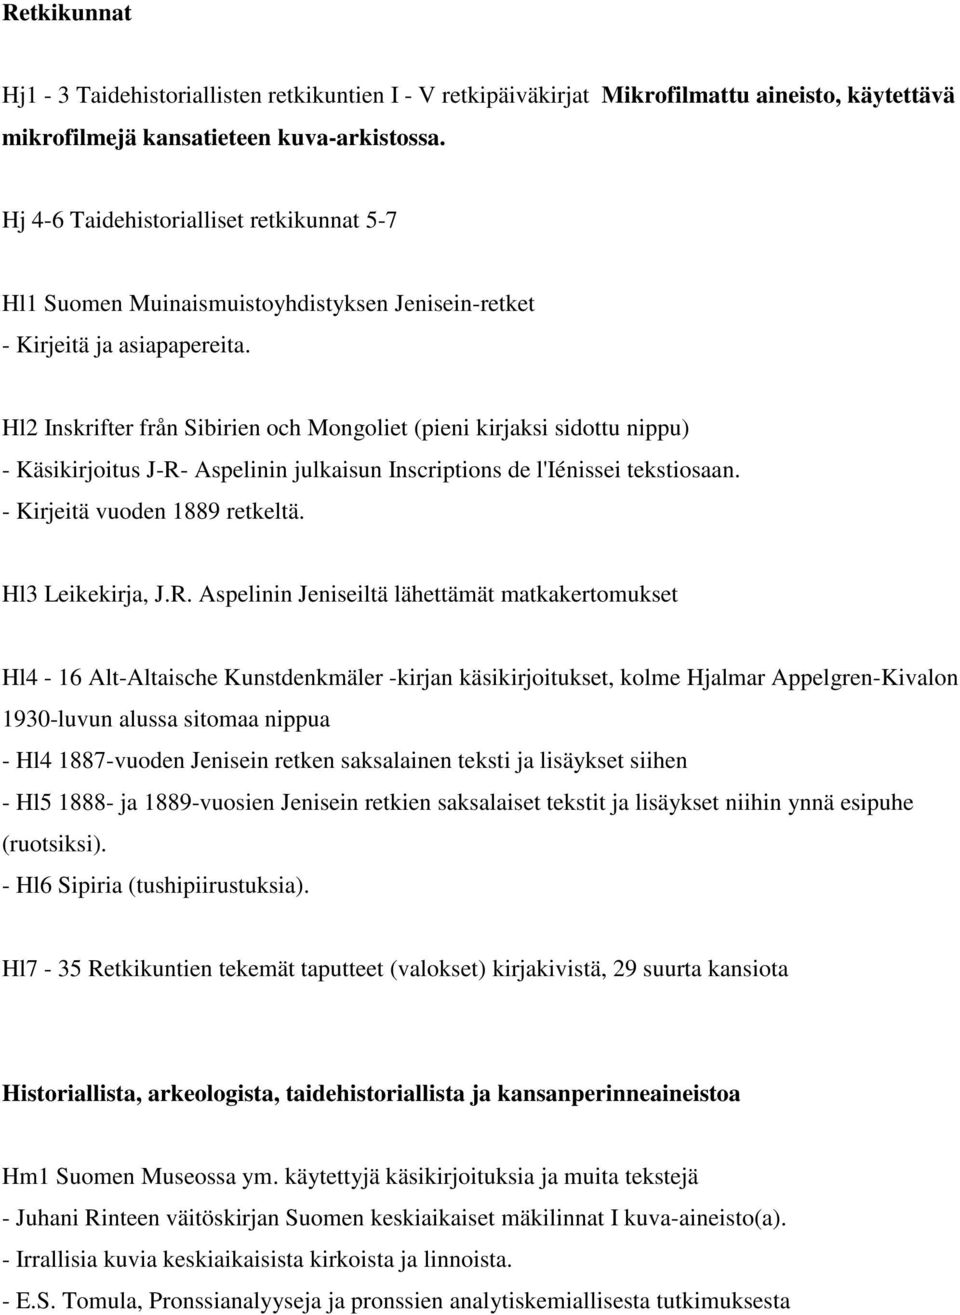 Hl2 Inskrifter från Sibirien och Mongoliet (pieni kirjaksi sidottu nippu) - Käsikirjoitus J-R- Aspelinin julkaisun Inscriptions de l'iénissei tekstiosaan. - Kirjeitä vuoden 1889 retkeltä.